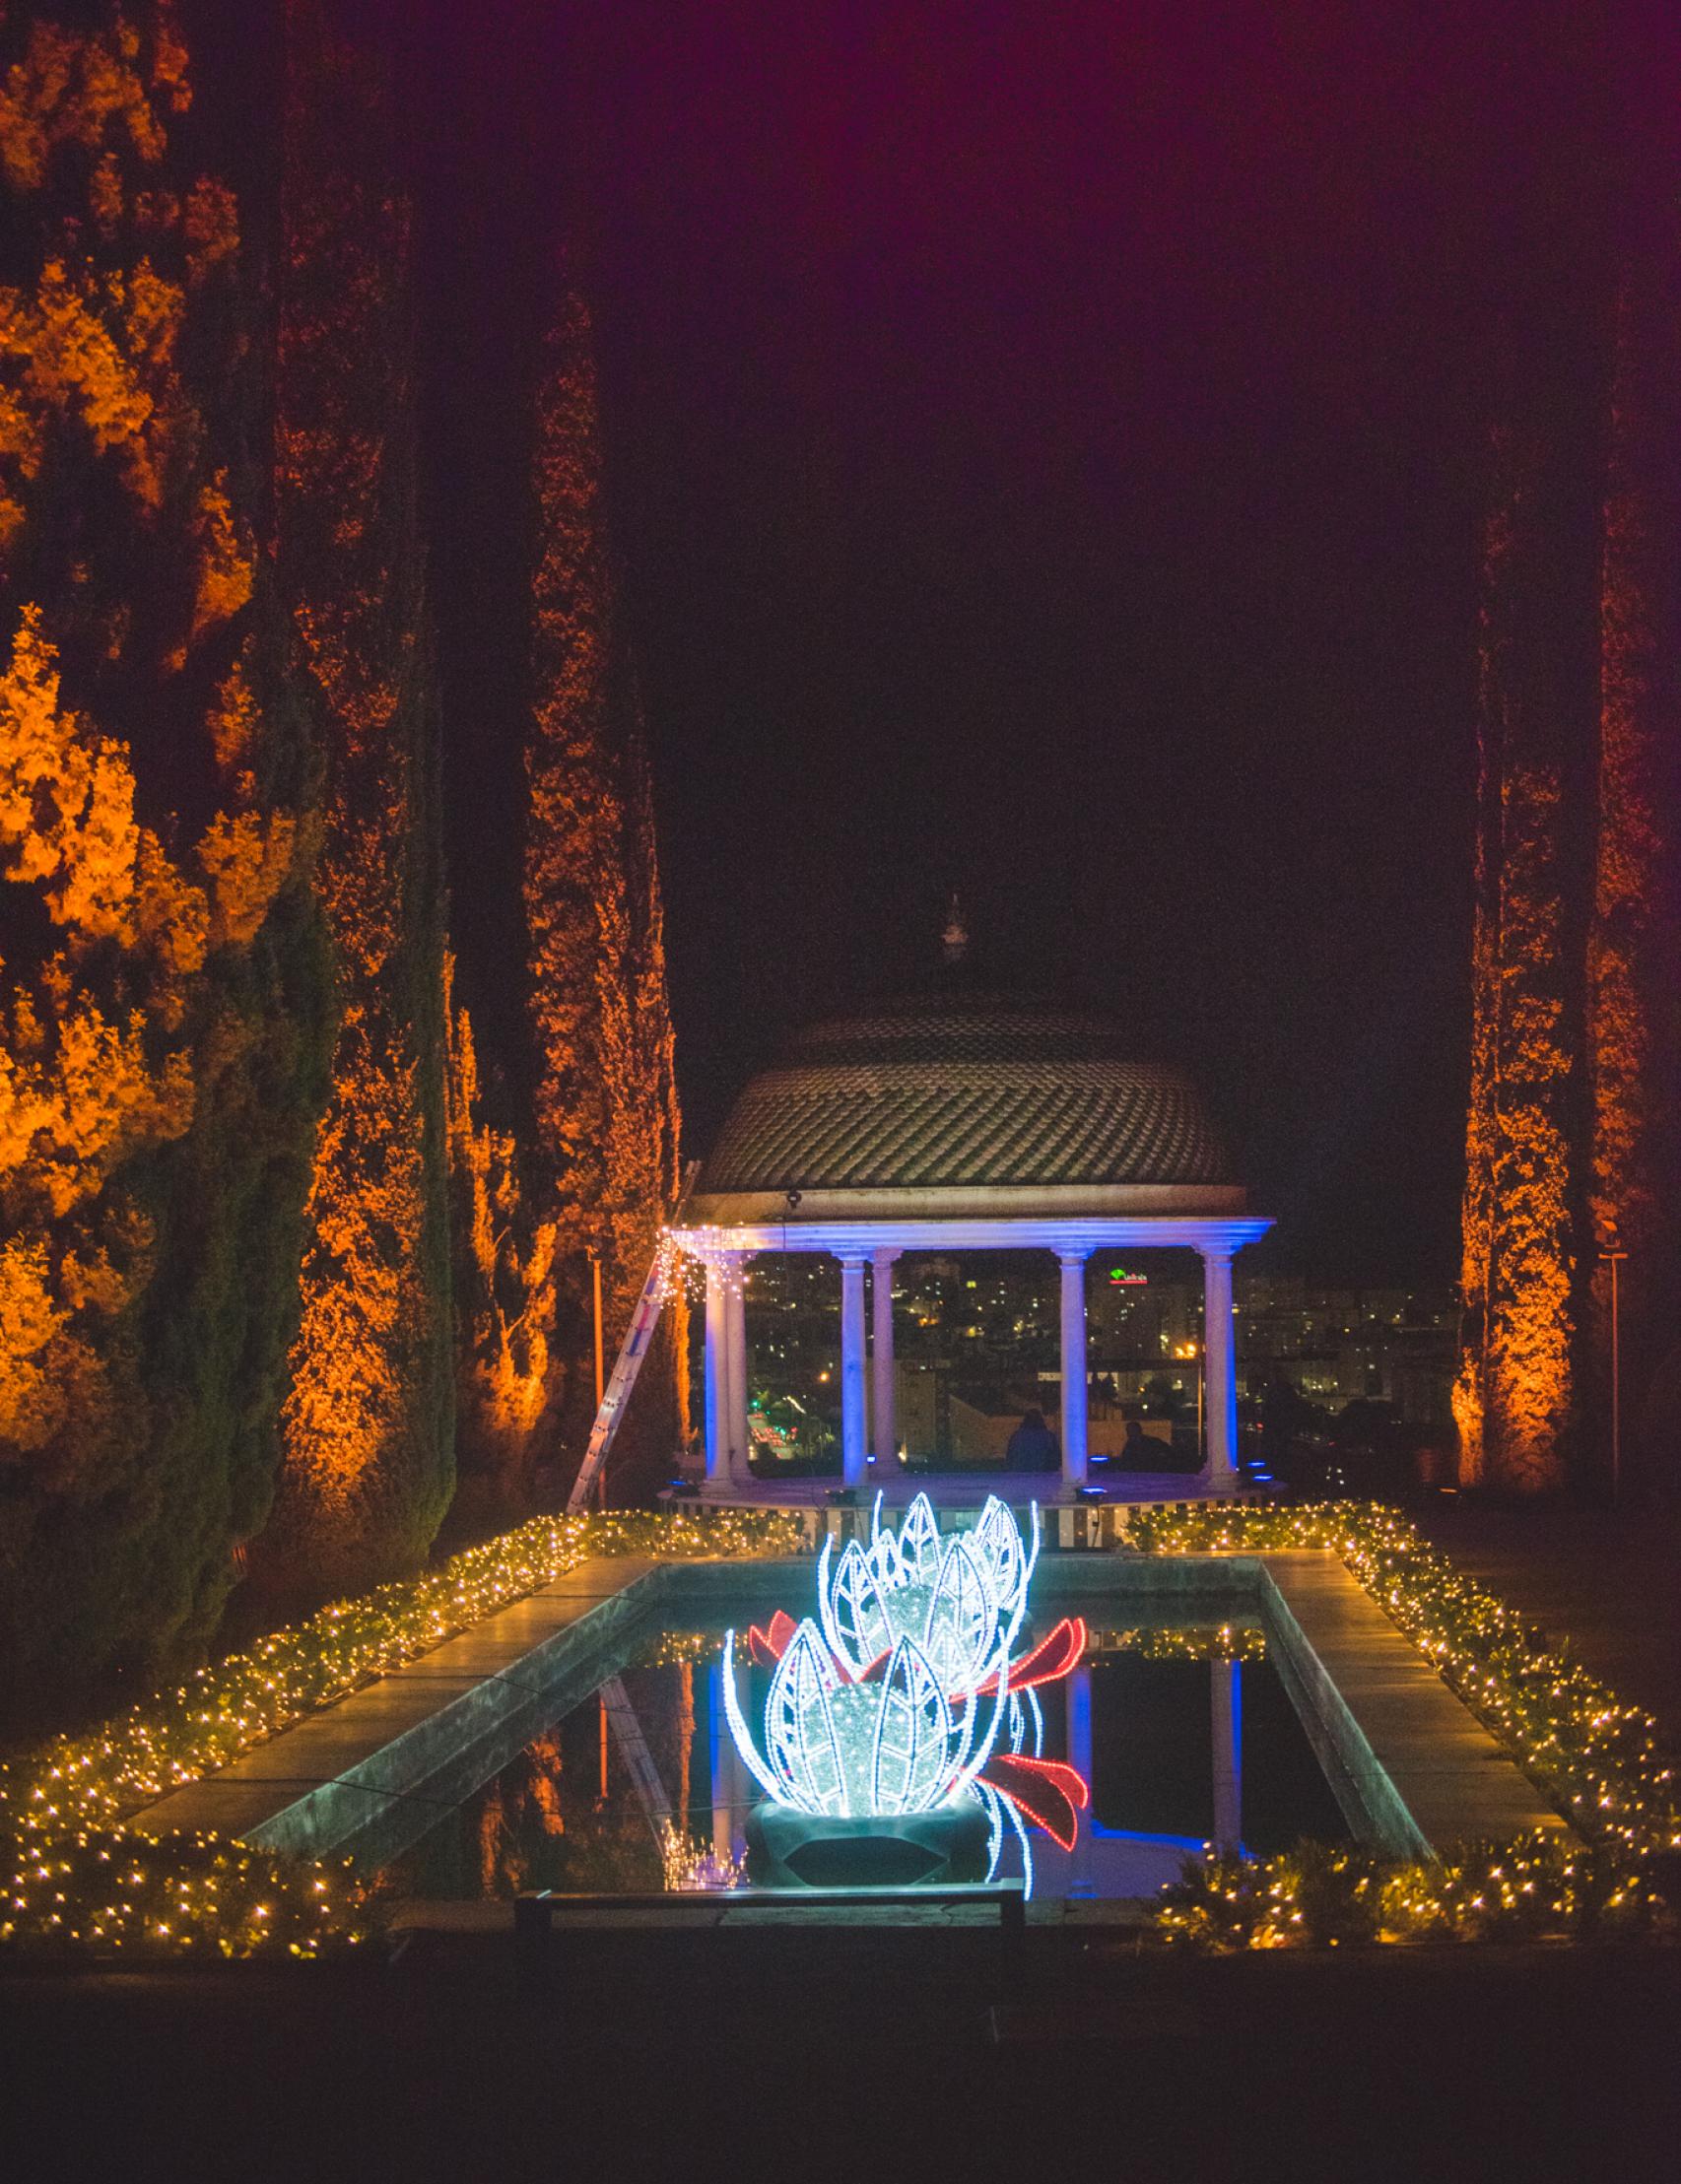 Una imagan del Jardín de La Concepción iluminado.